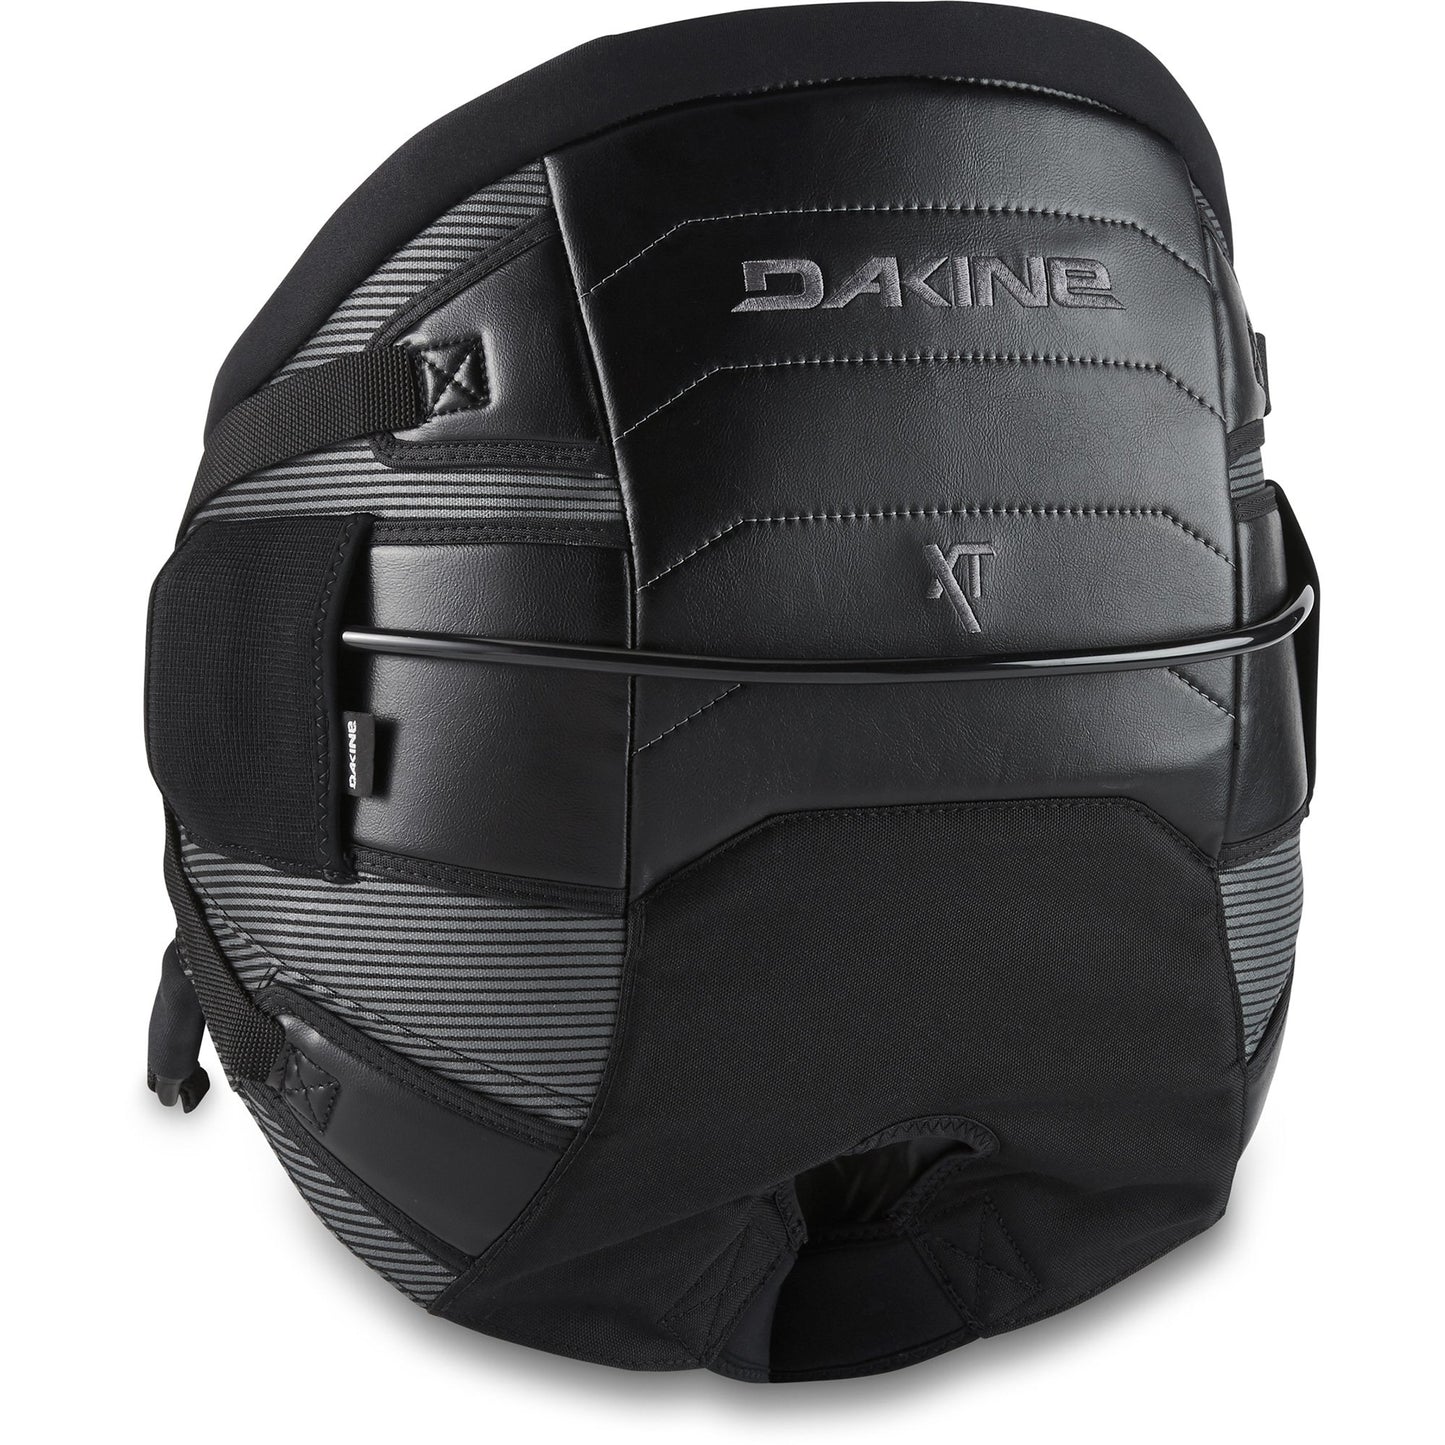 Dakine XT Seat Harness (Black)